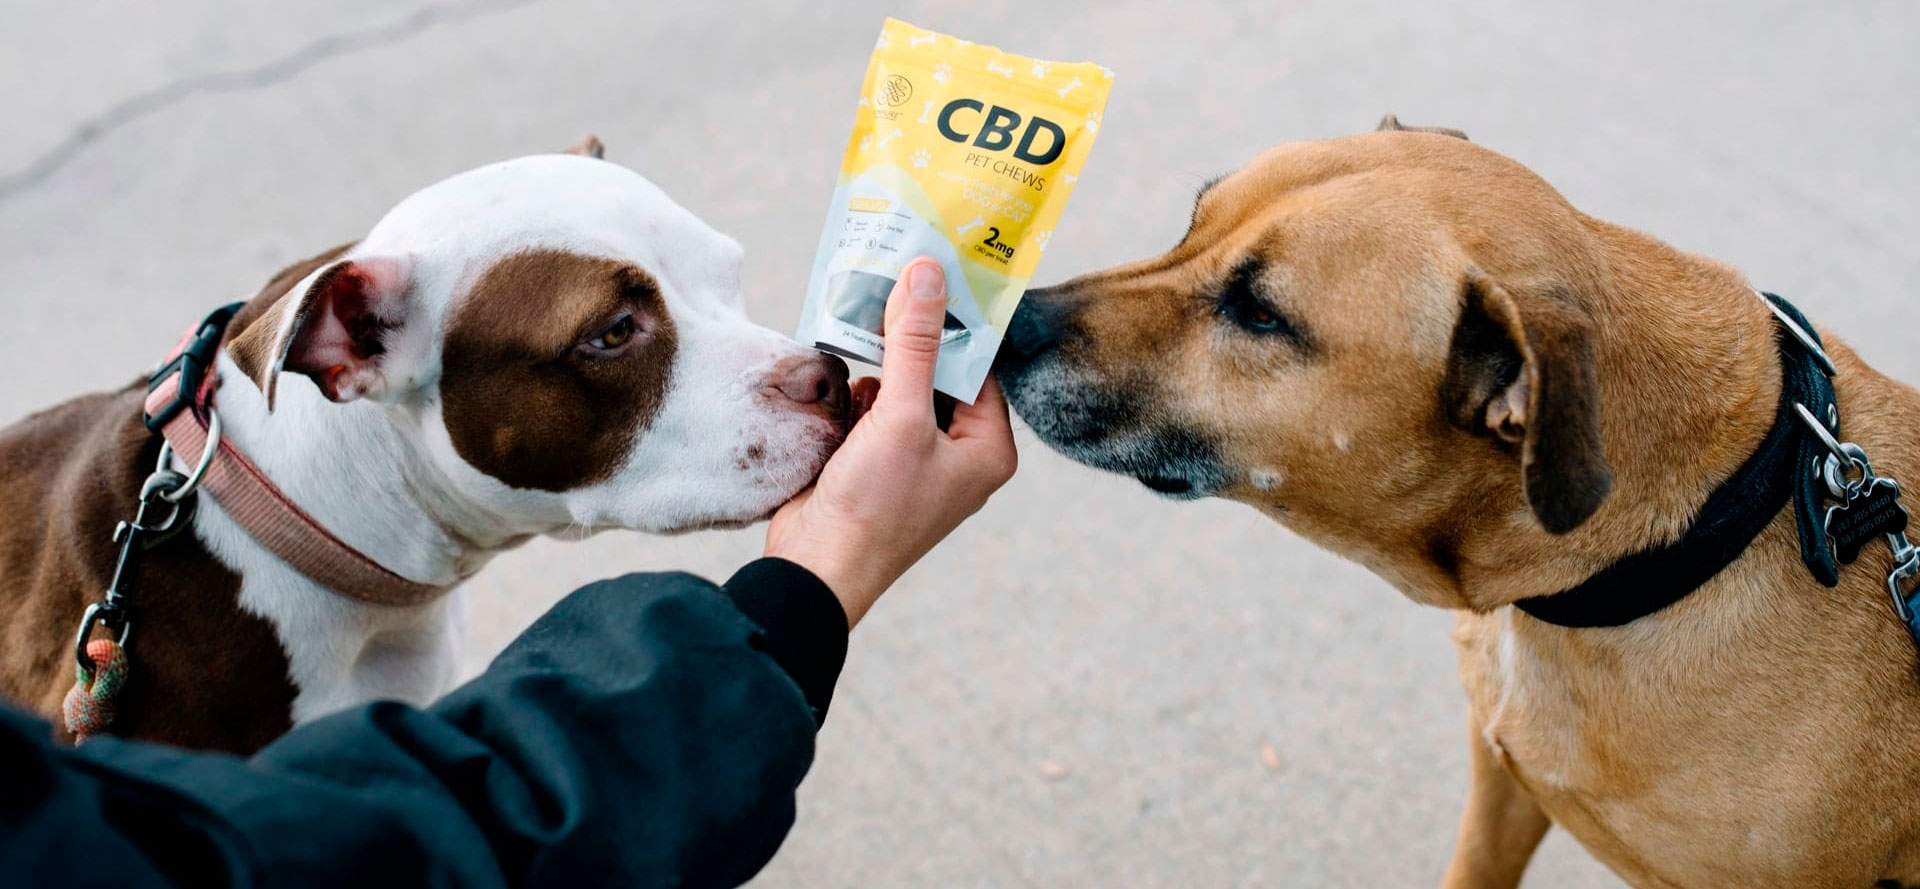 Pug and CBD organic treats for dog.